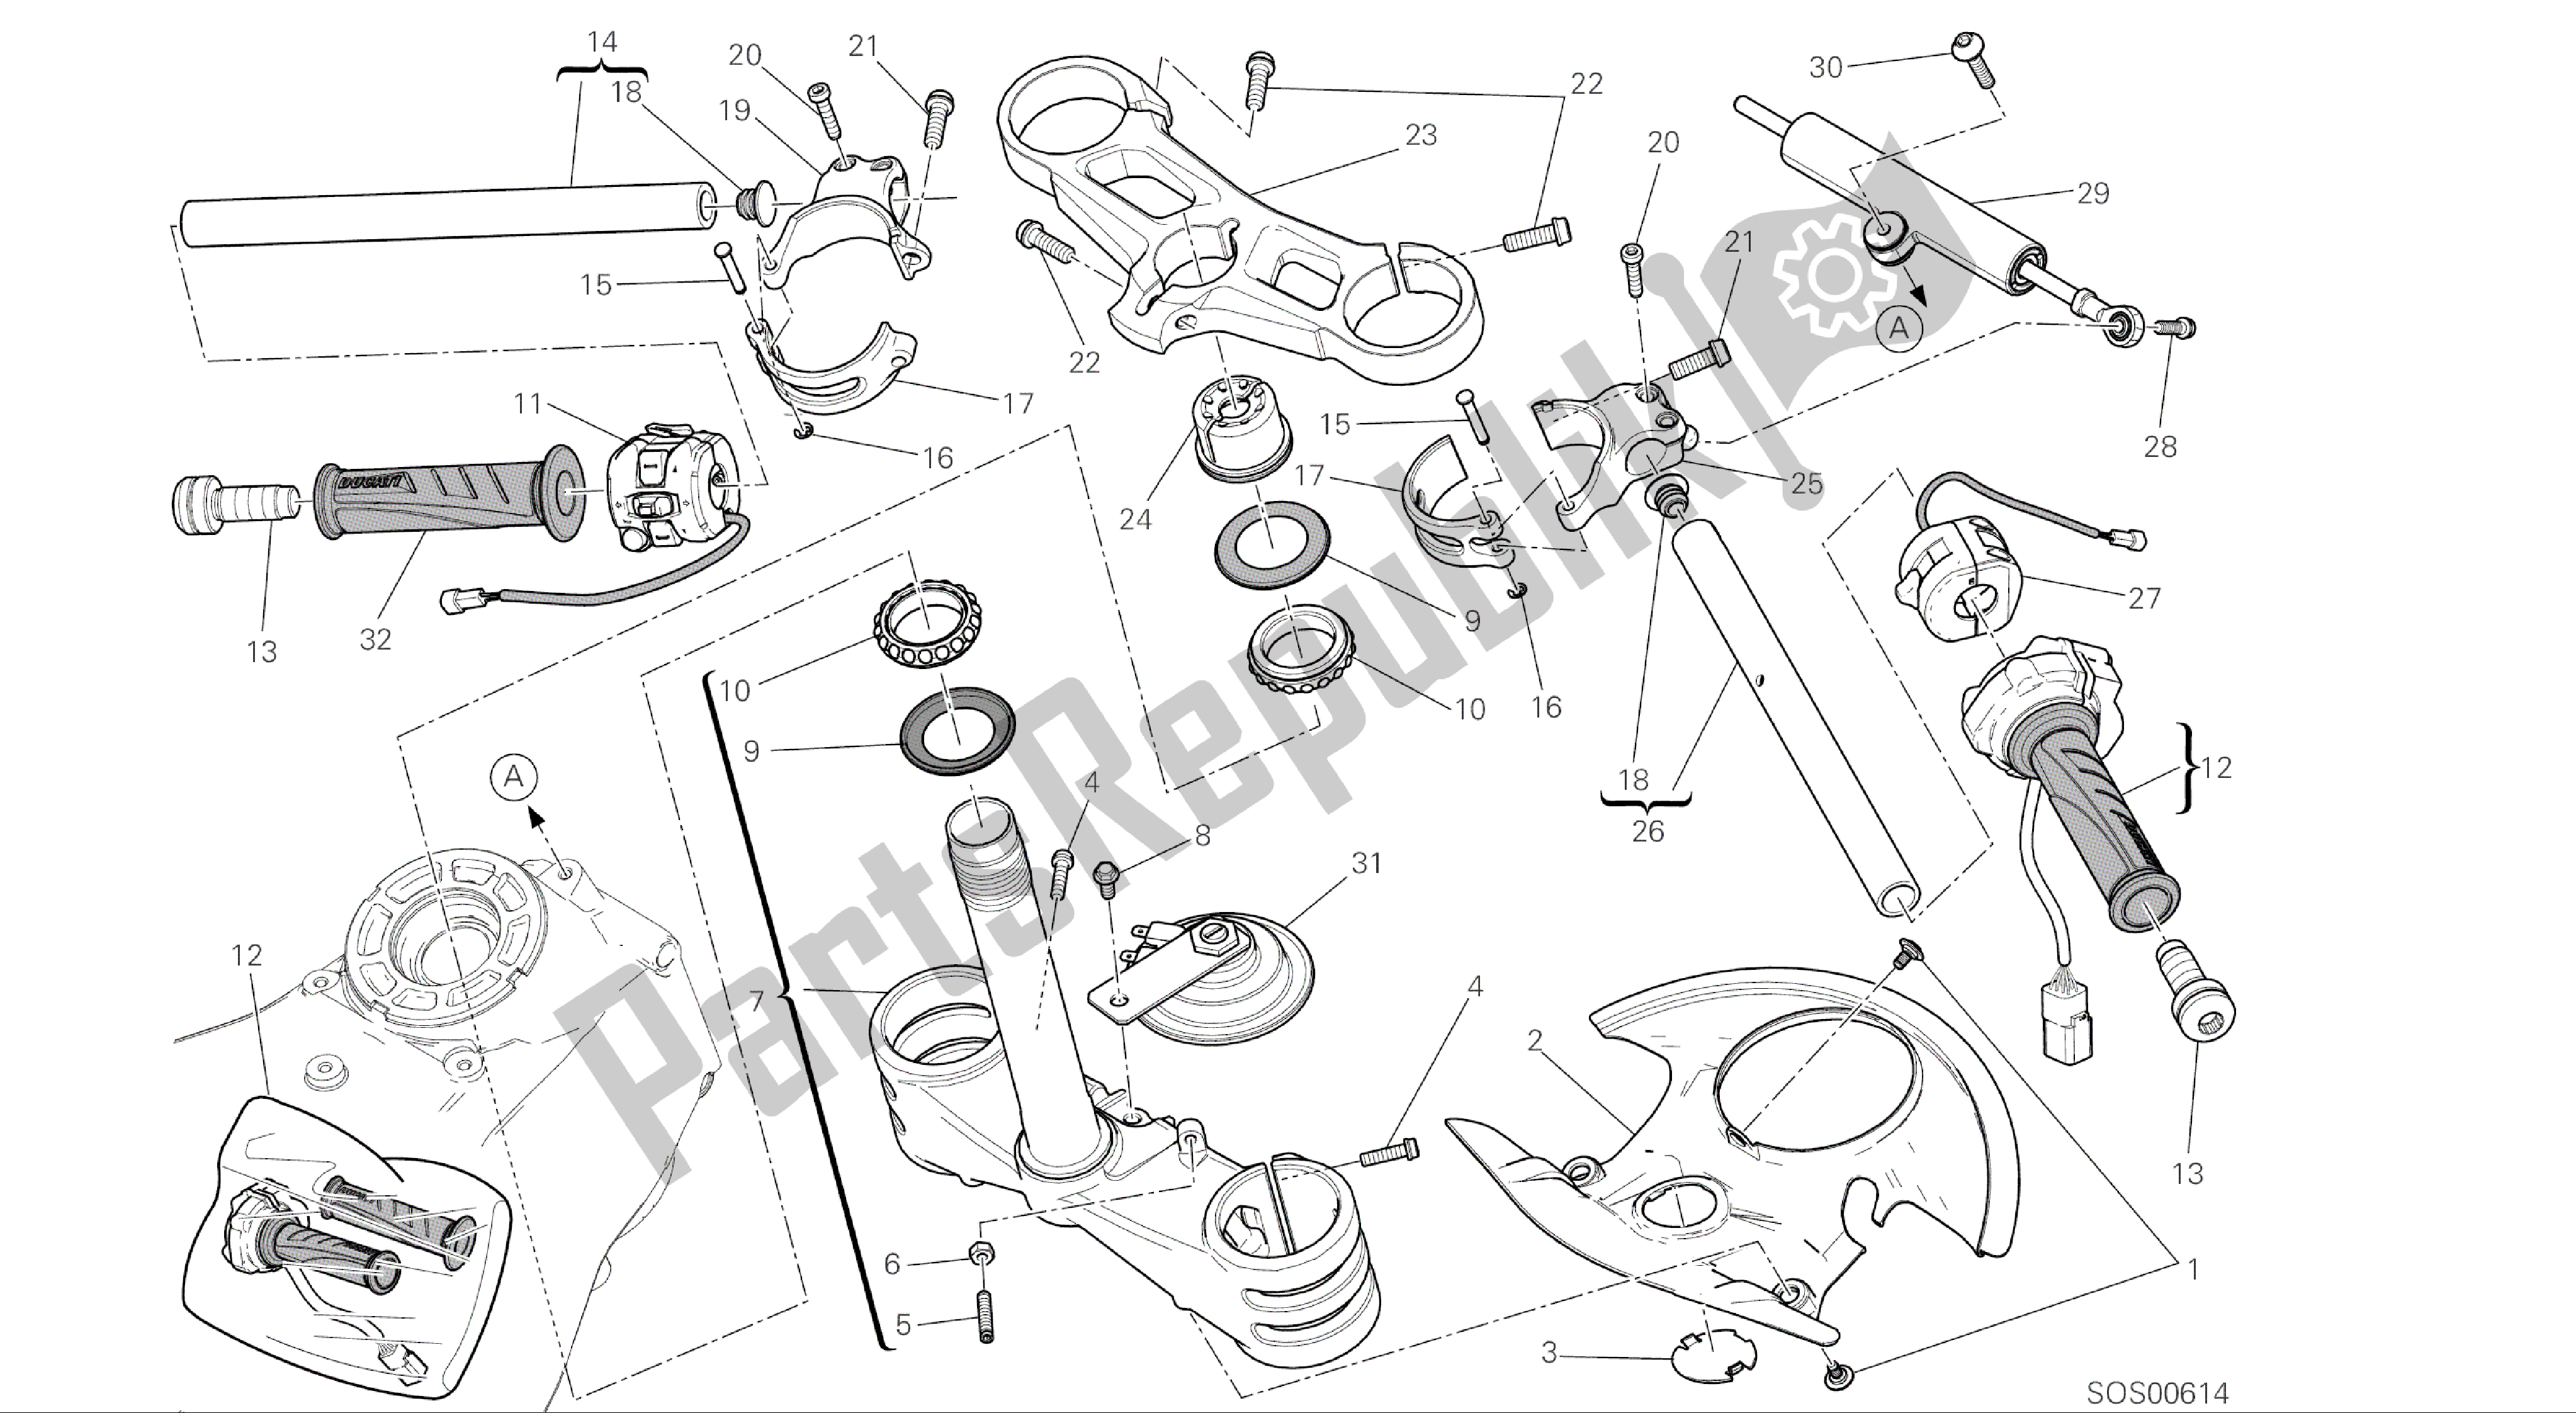 Alle onderdelen voor de Tekening 021 - Semimanubri - Ammortizzatore Di Sterzo [mod: 1299; Xst: Aus, Eur, Fra, Jap, Twn] Groepsframe van de Ducati Panigale ABS 1299 2016